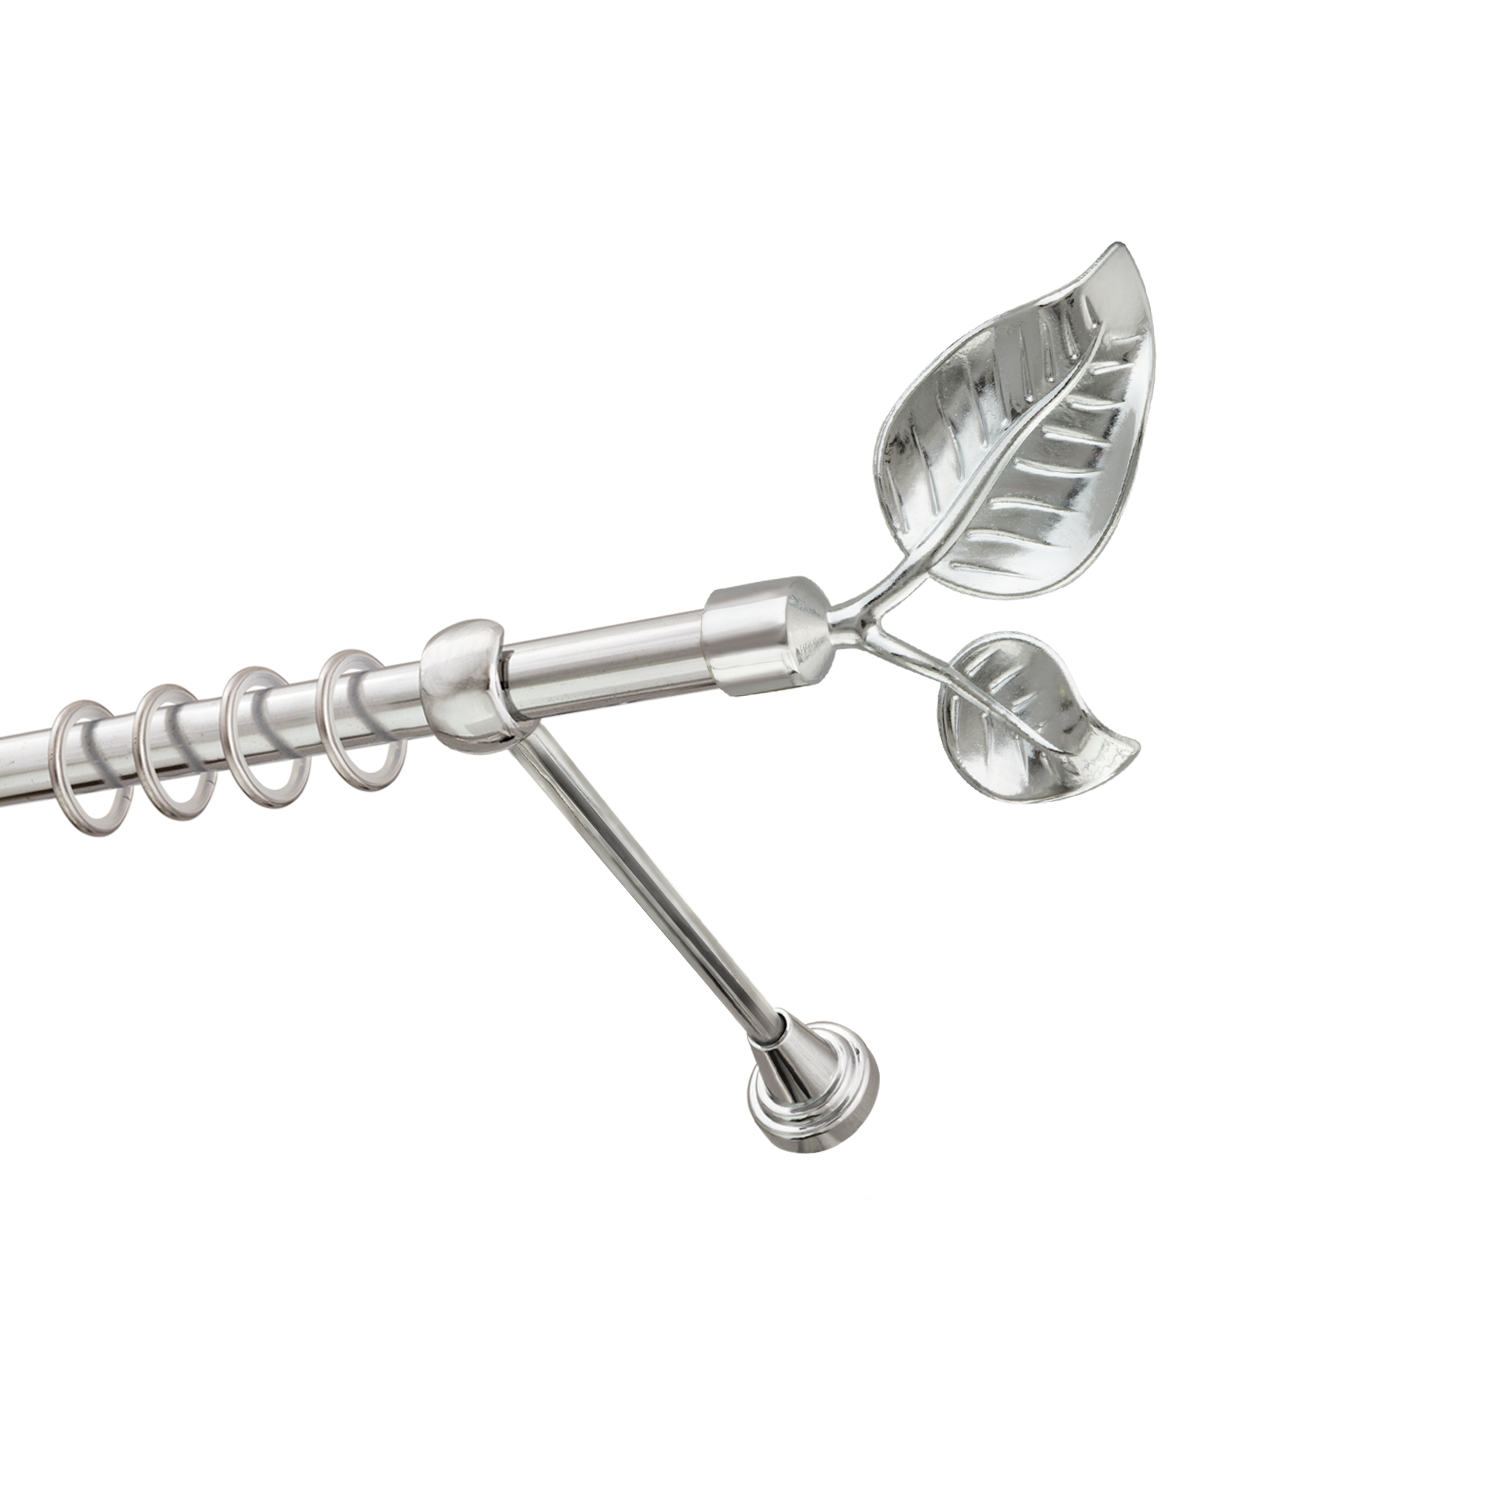 Металлический карниз для штор Тропик, однорядный 16 мм, серебро, гладкая штанга, длина 200 см - фото Wikidecor.ru